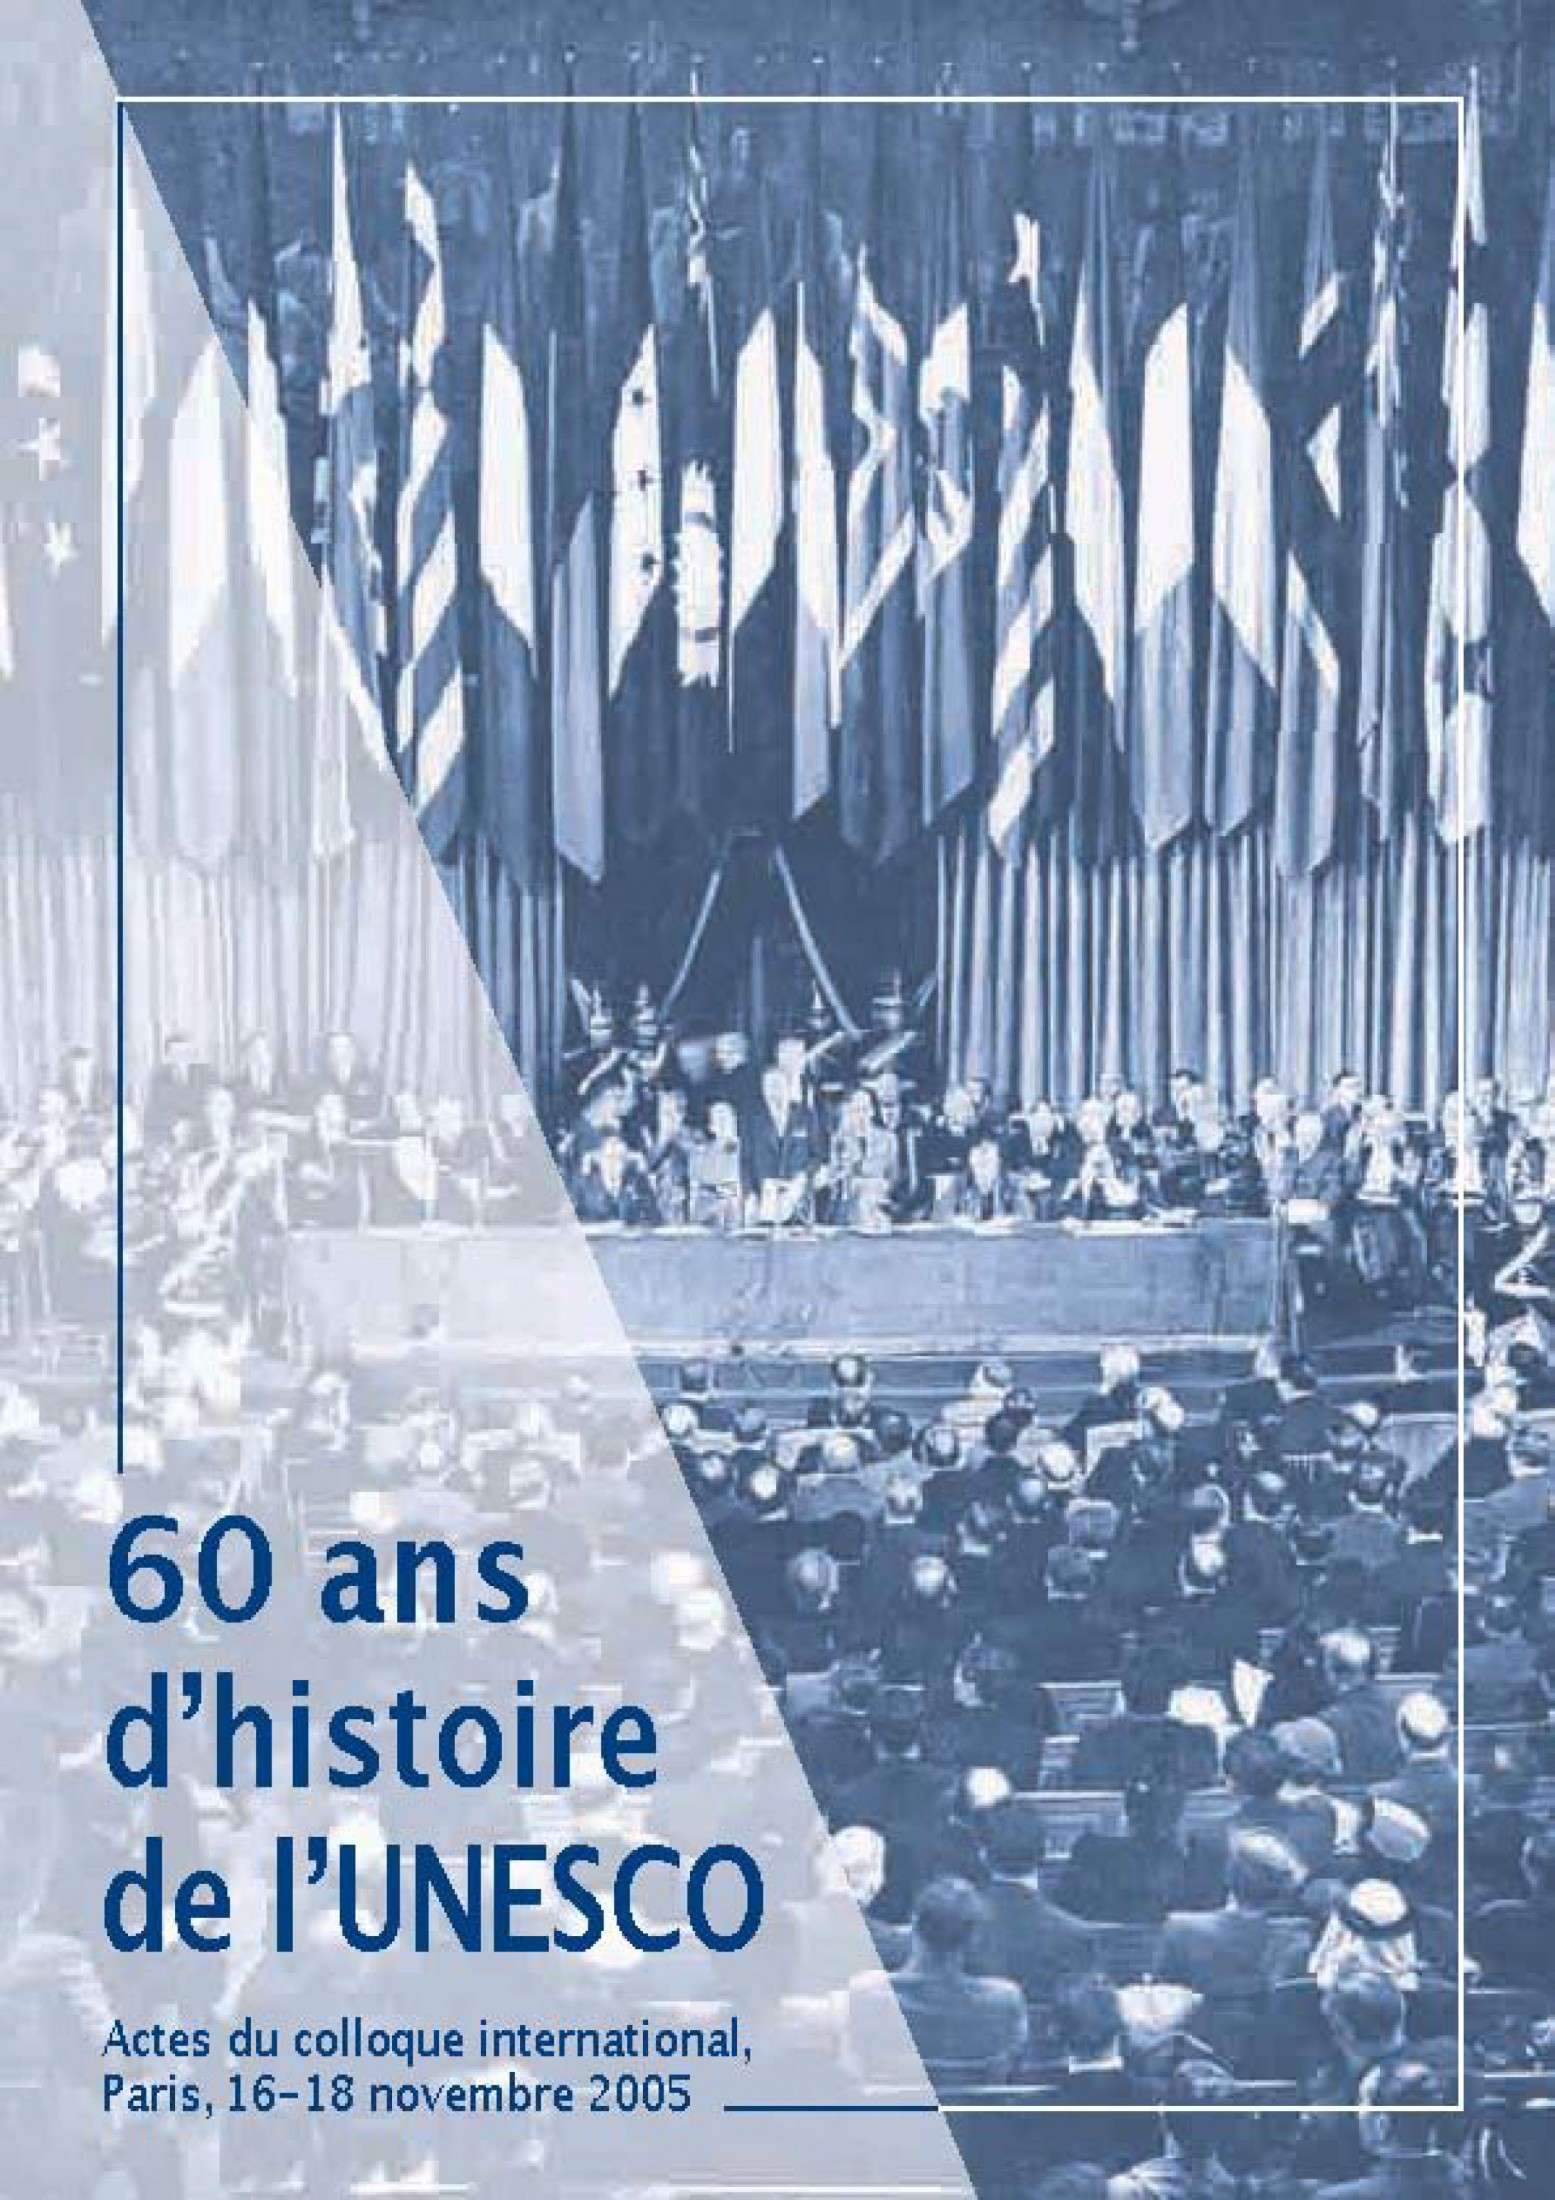 60 ans d’histoire de l’UNESCO